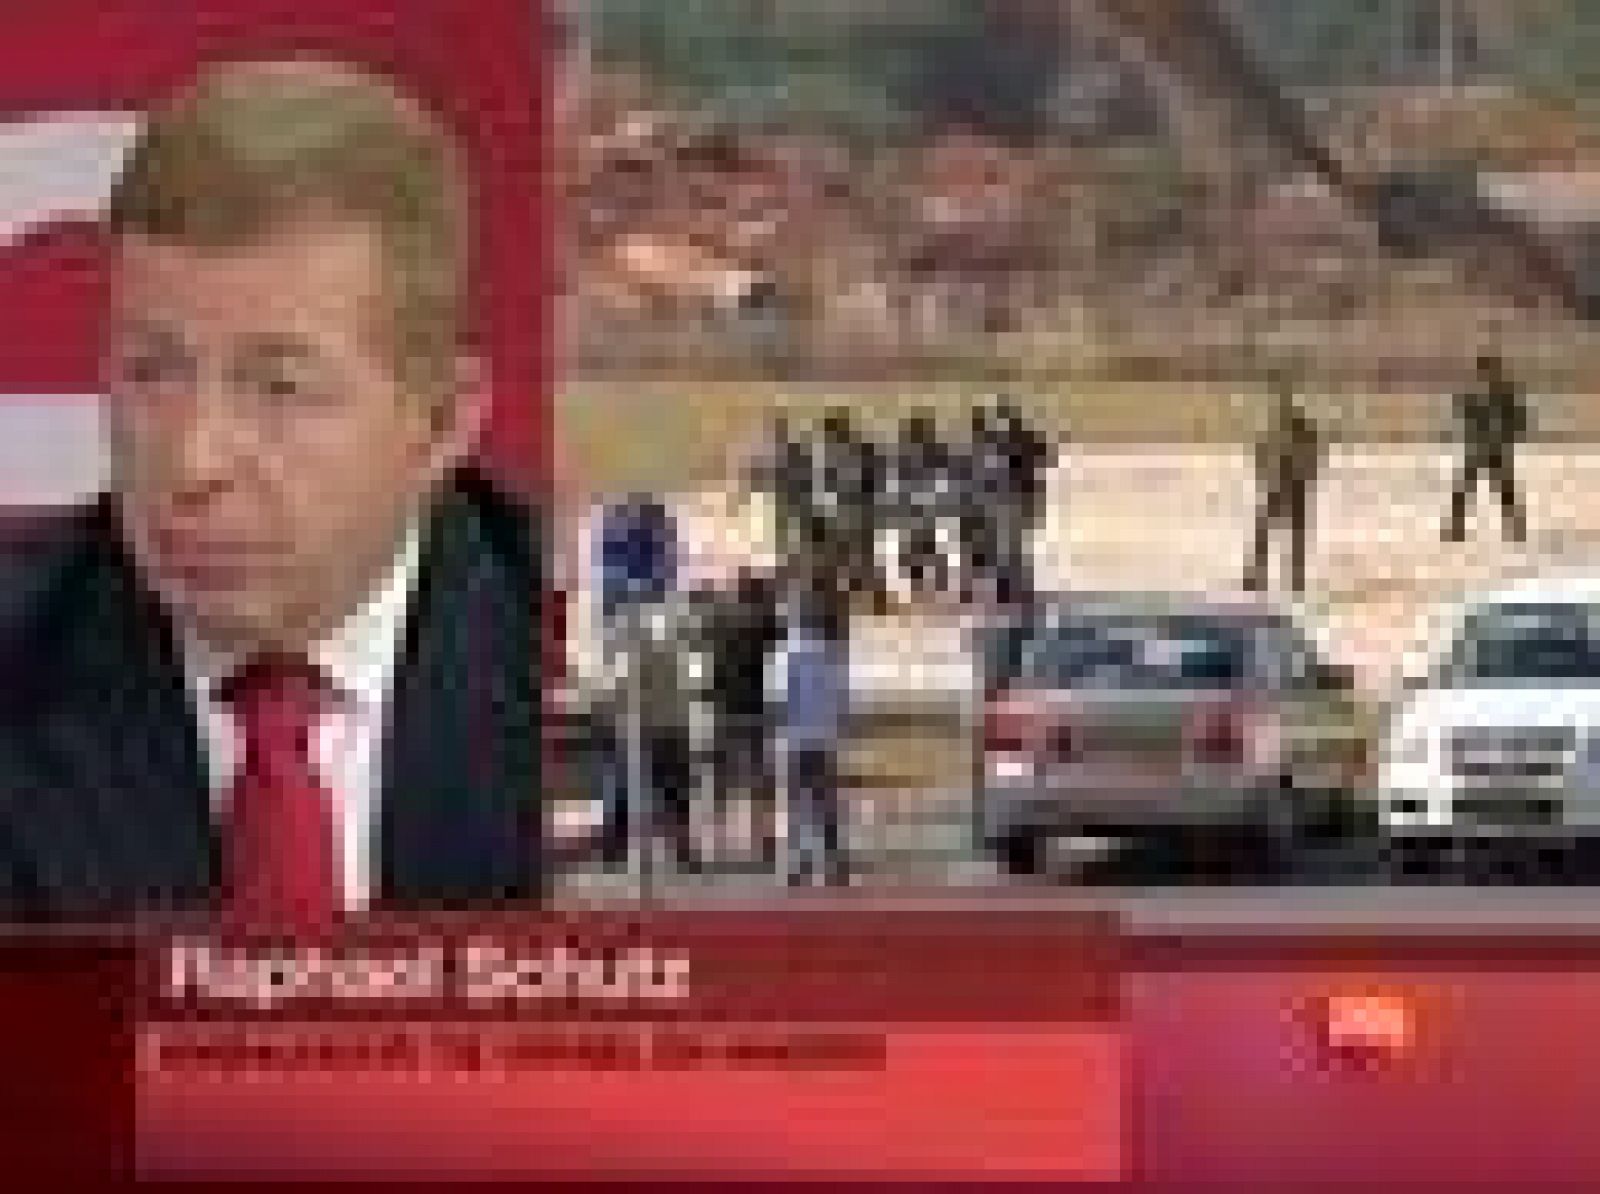 El embajador israelí en España, Raphael Schutz, ha dicho en referencia al asalto de su país a la 'Flotilla de la Libertad' que su Ejército ha actuado en "defensa propia" al ser "atacado brutalmente con una violencia feroz por un grupo de radicales disfrazados de defensores de derechos humanos, que no son". Schutz ha añadido en una entrevista en 'La noche en 24 Horas' que el bloqueo a Gaza es legal, por lo que Israel tiene plena legitimidad para actuar en aguas internacionales.